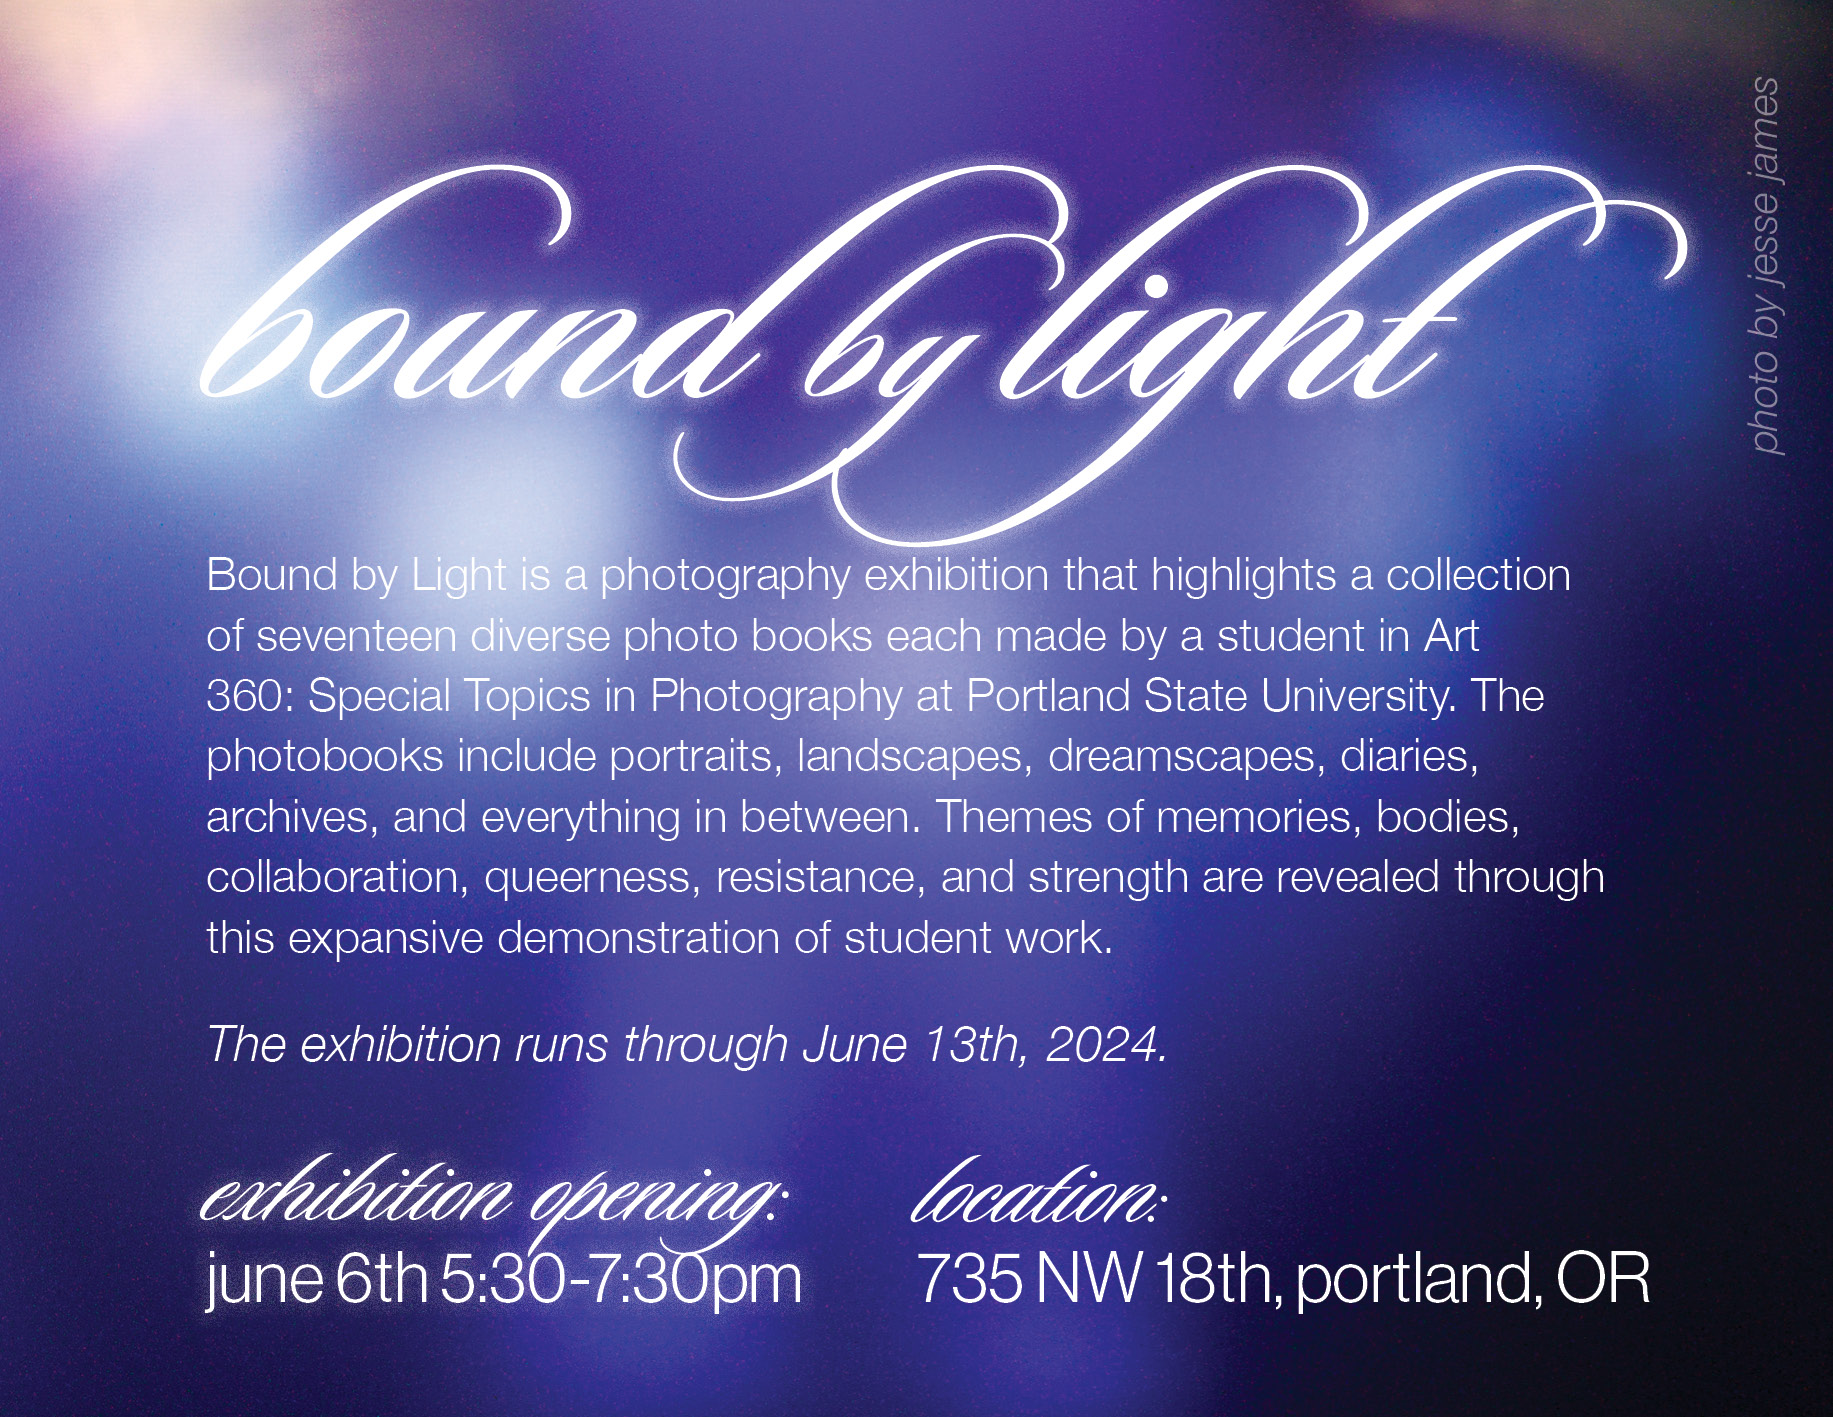 Bound by Light | Portland State University Art 360 | Image 1/1